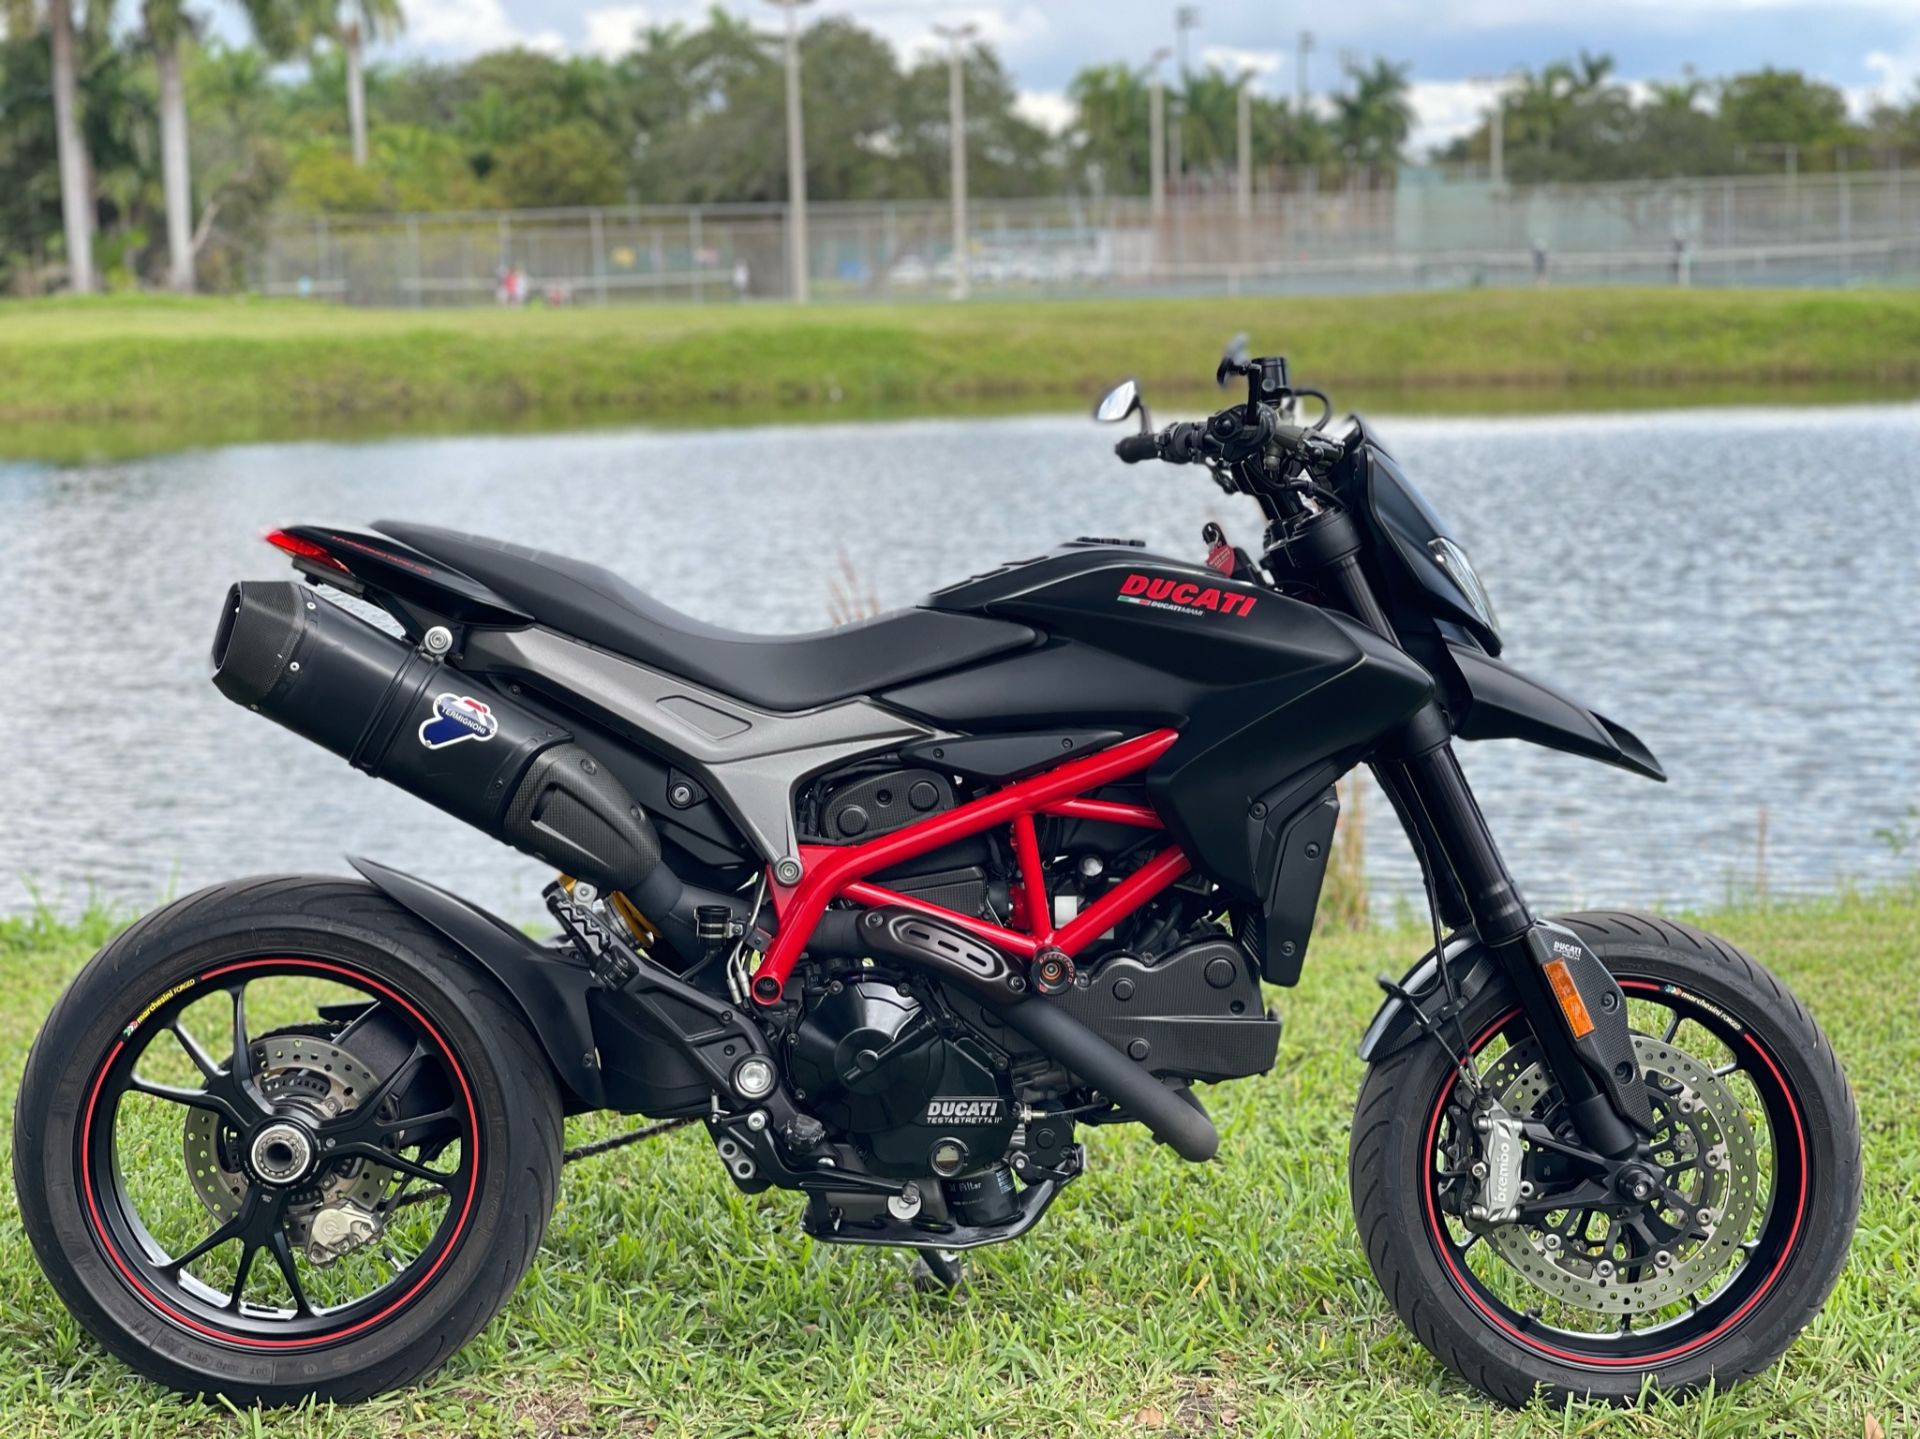 2014 Ducati Hypermotard in North Miami Beach, Florida - Photo 3